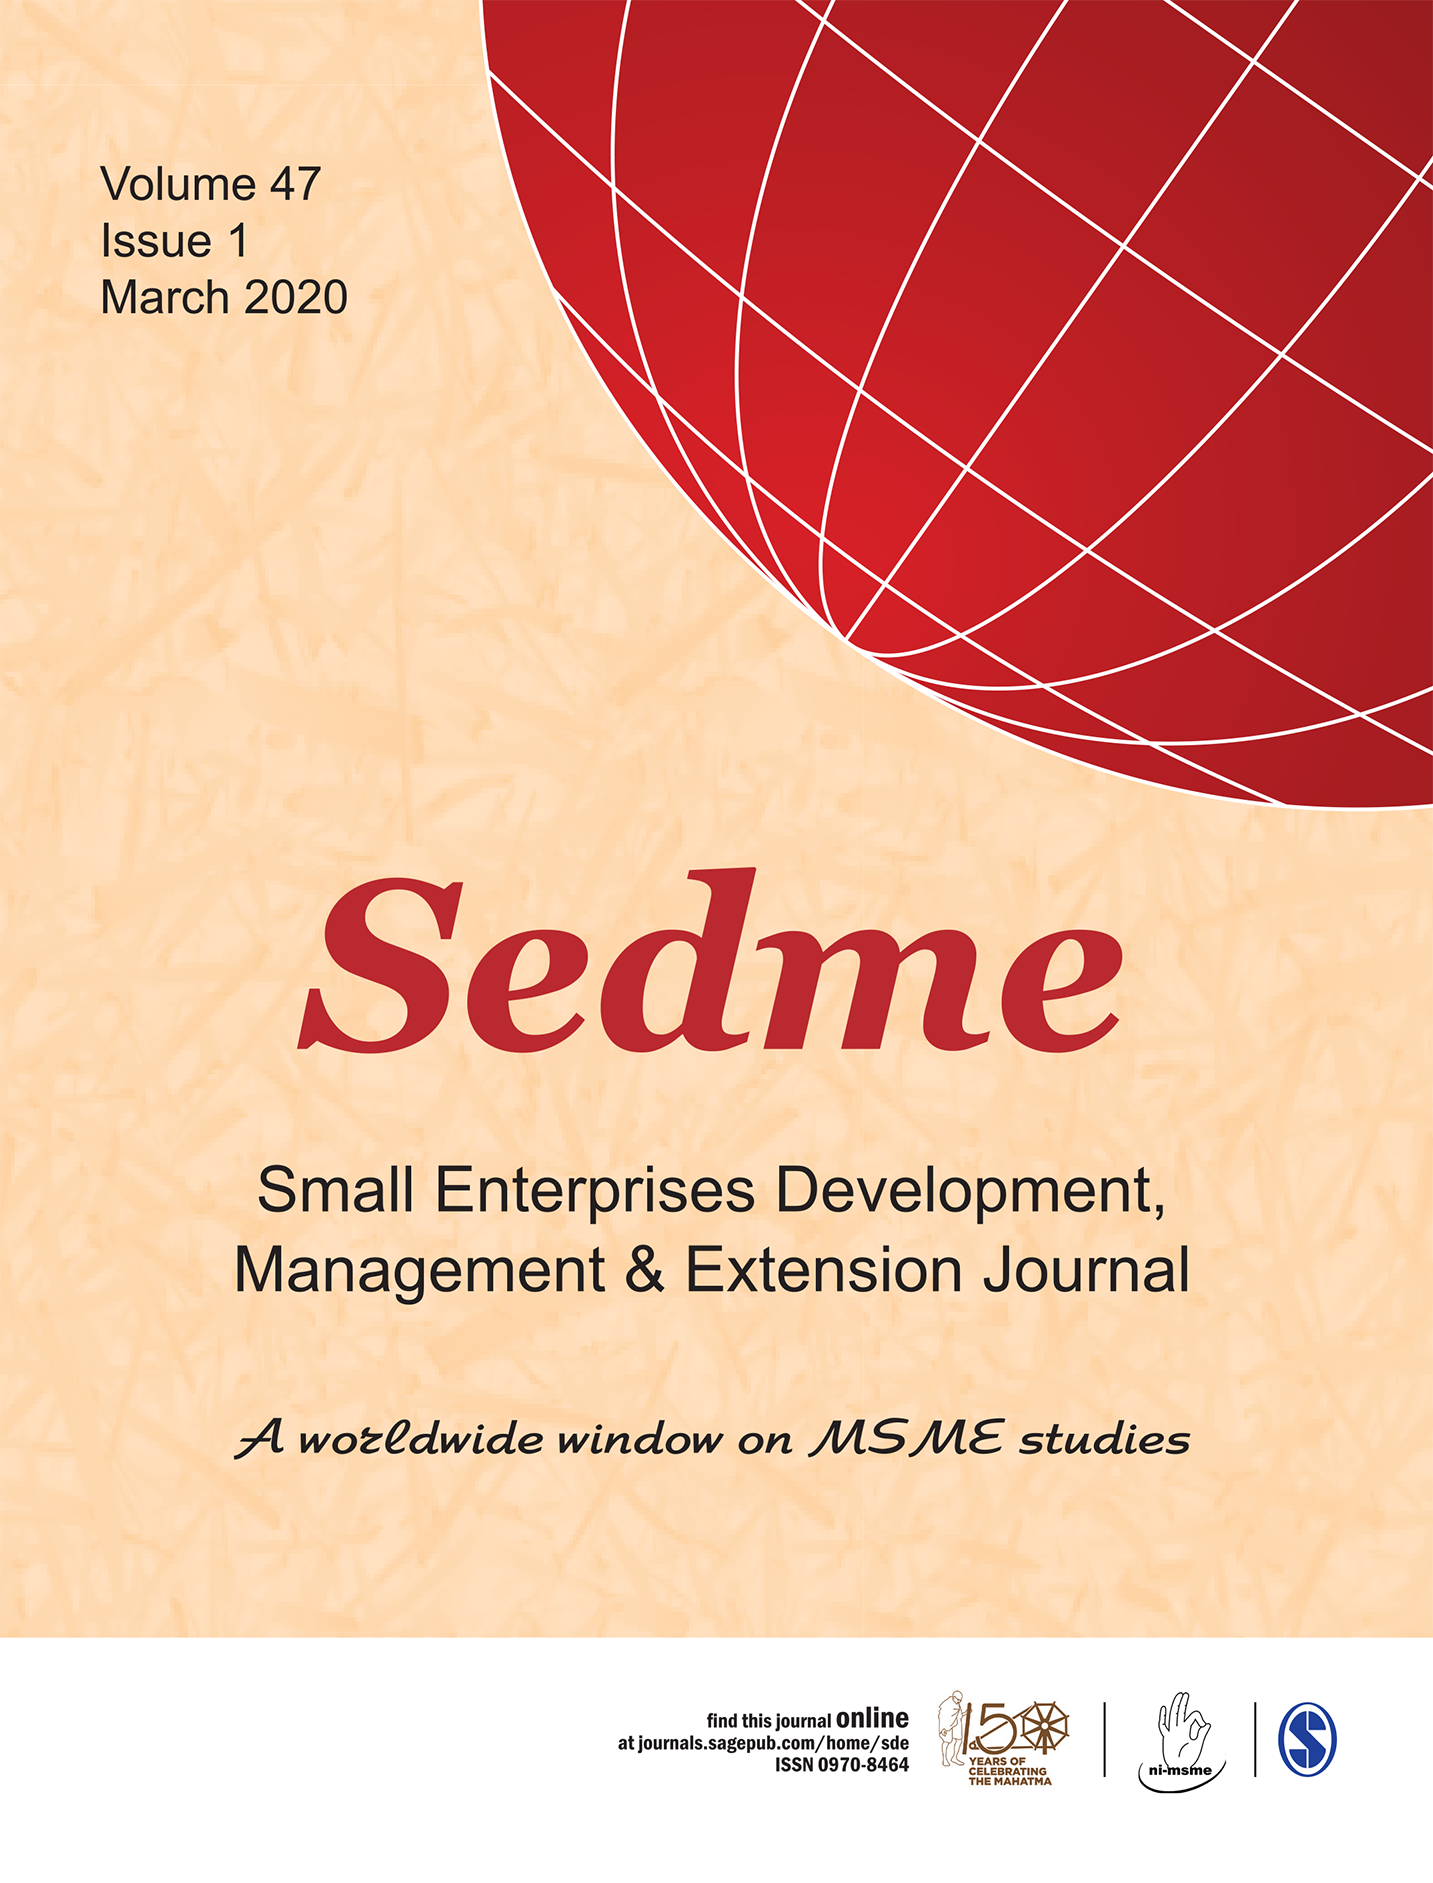 SEDME (Small Enterprises Development, Management & Extension Journal)